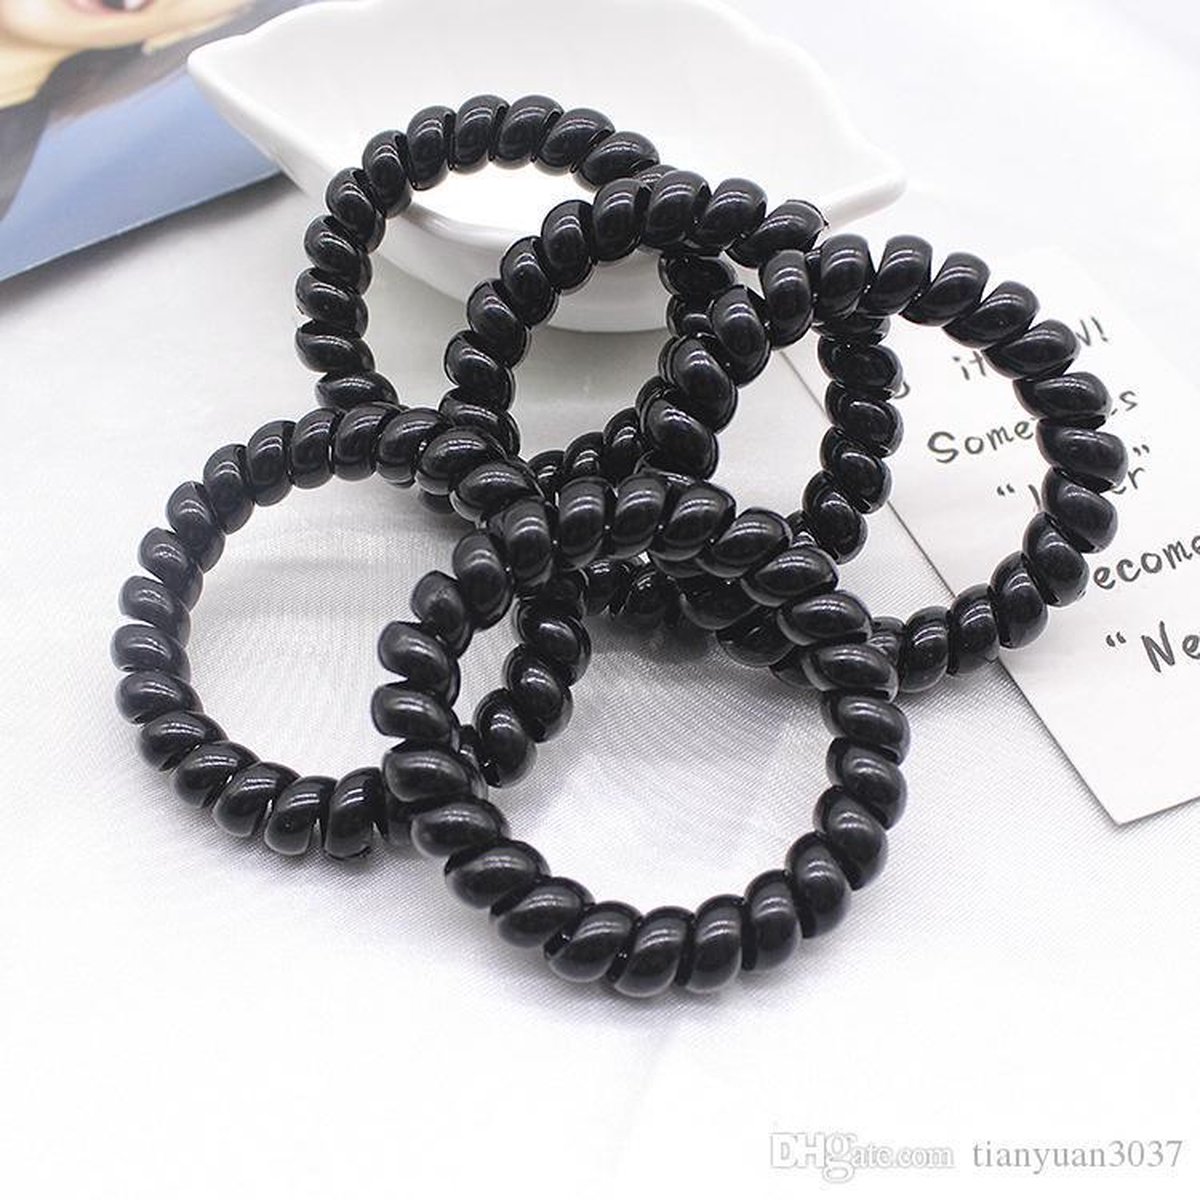 Zwarte Haarelastiekjes - 10 stuks - Telefoondraad - Spiraal - Haar elastiekjes of armband - Zwarte Haar Elastiekjes Voor Meisjes